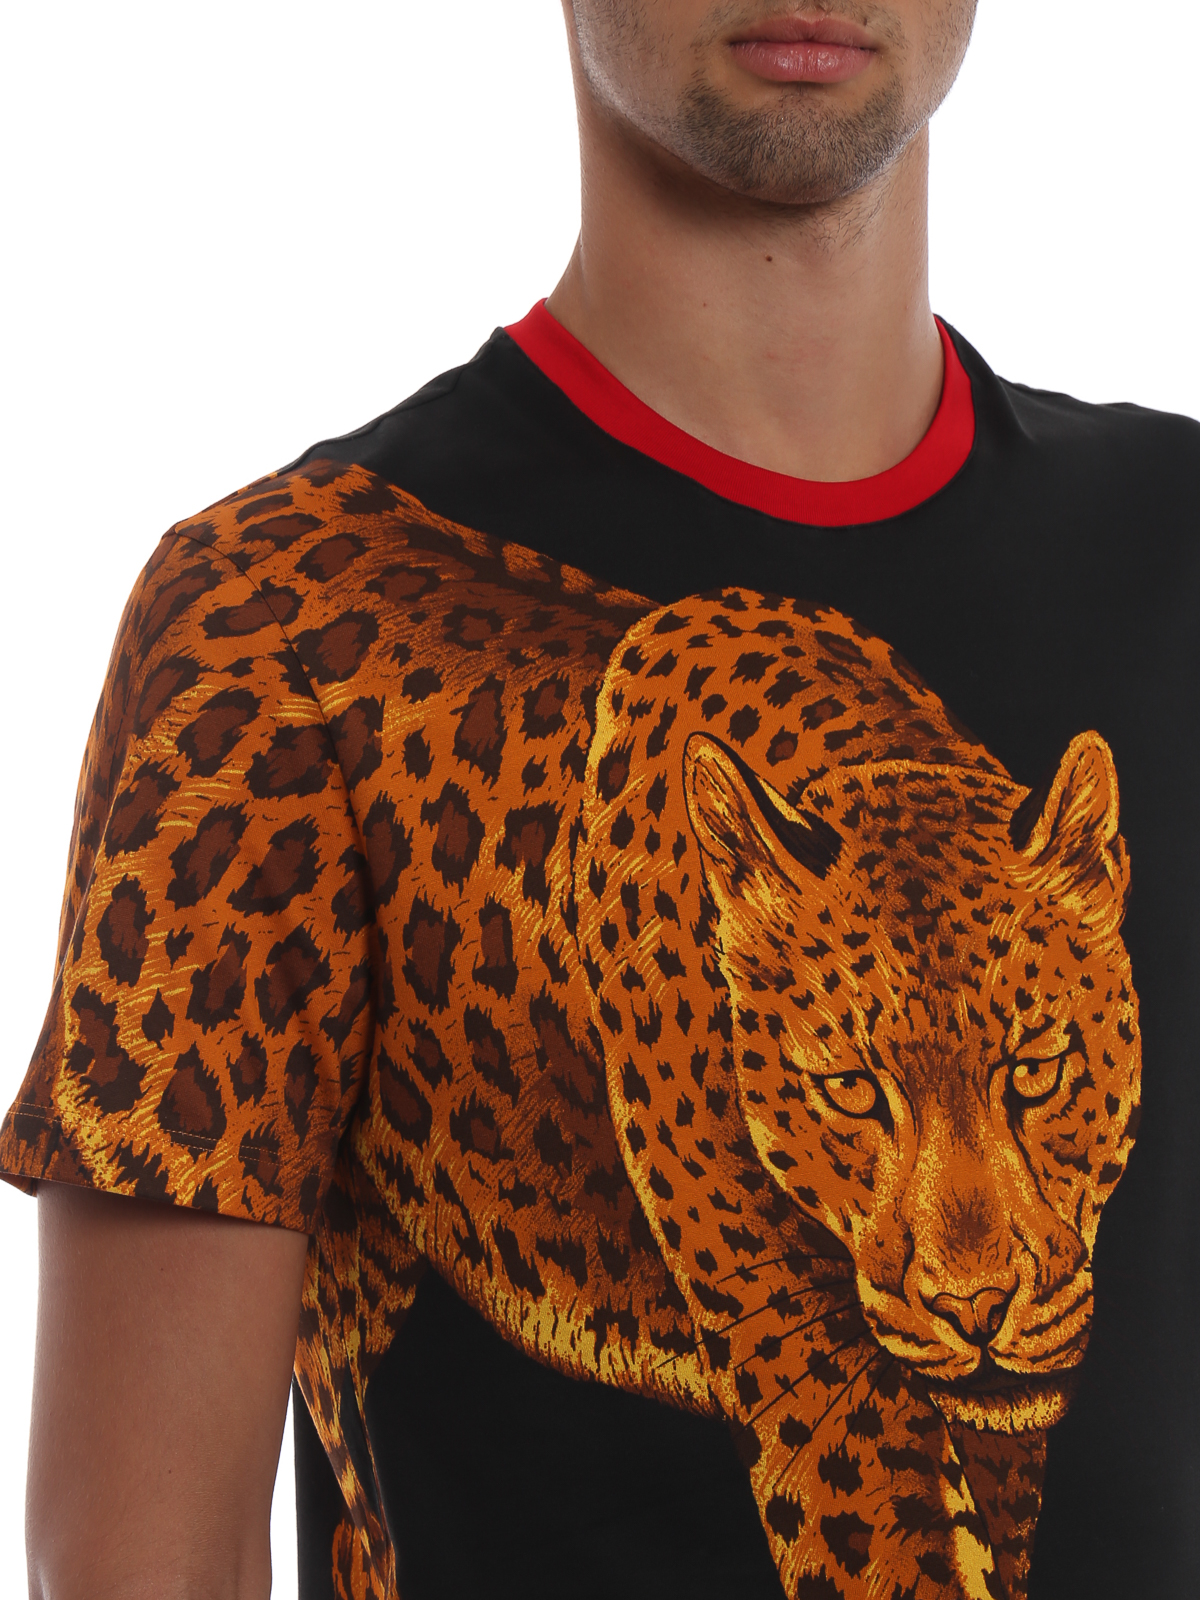 versace jaguar shirt